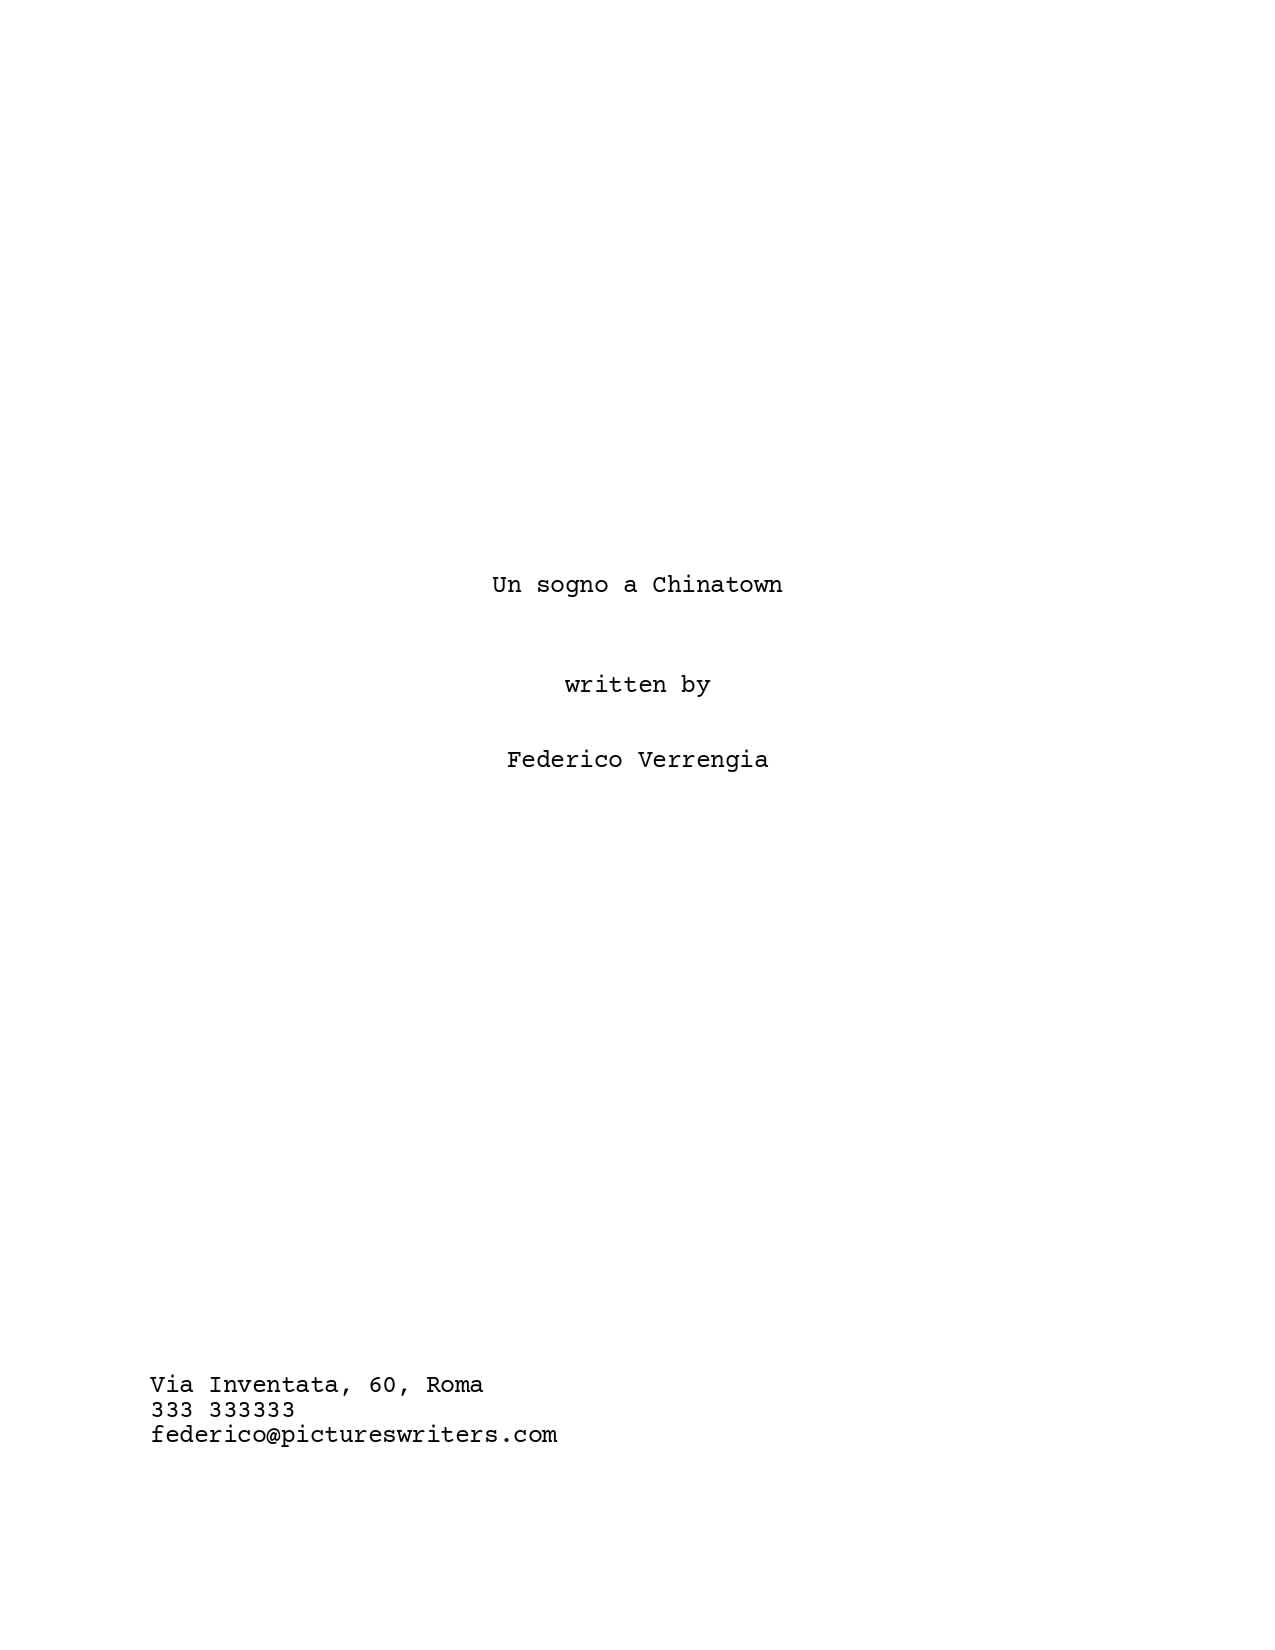 Come formattare una sceneggiatura - Esempio pagina titolo